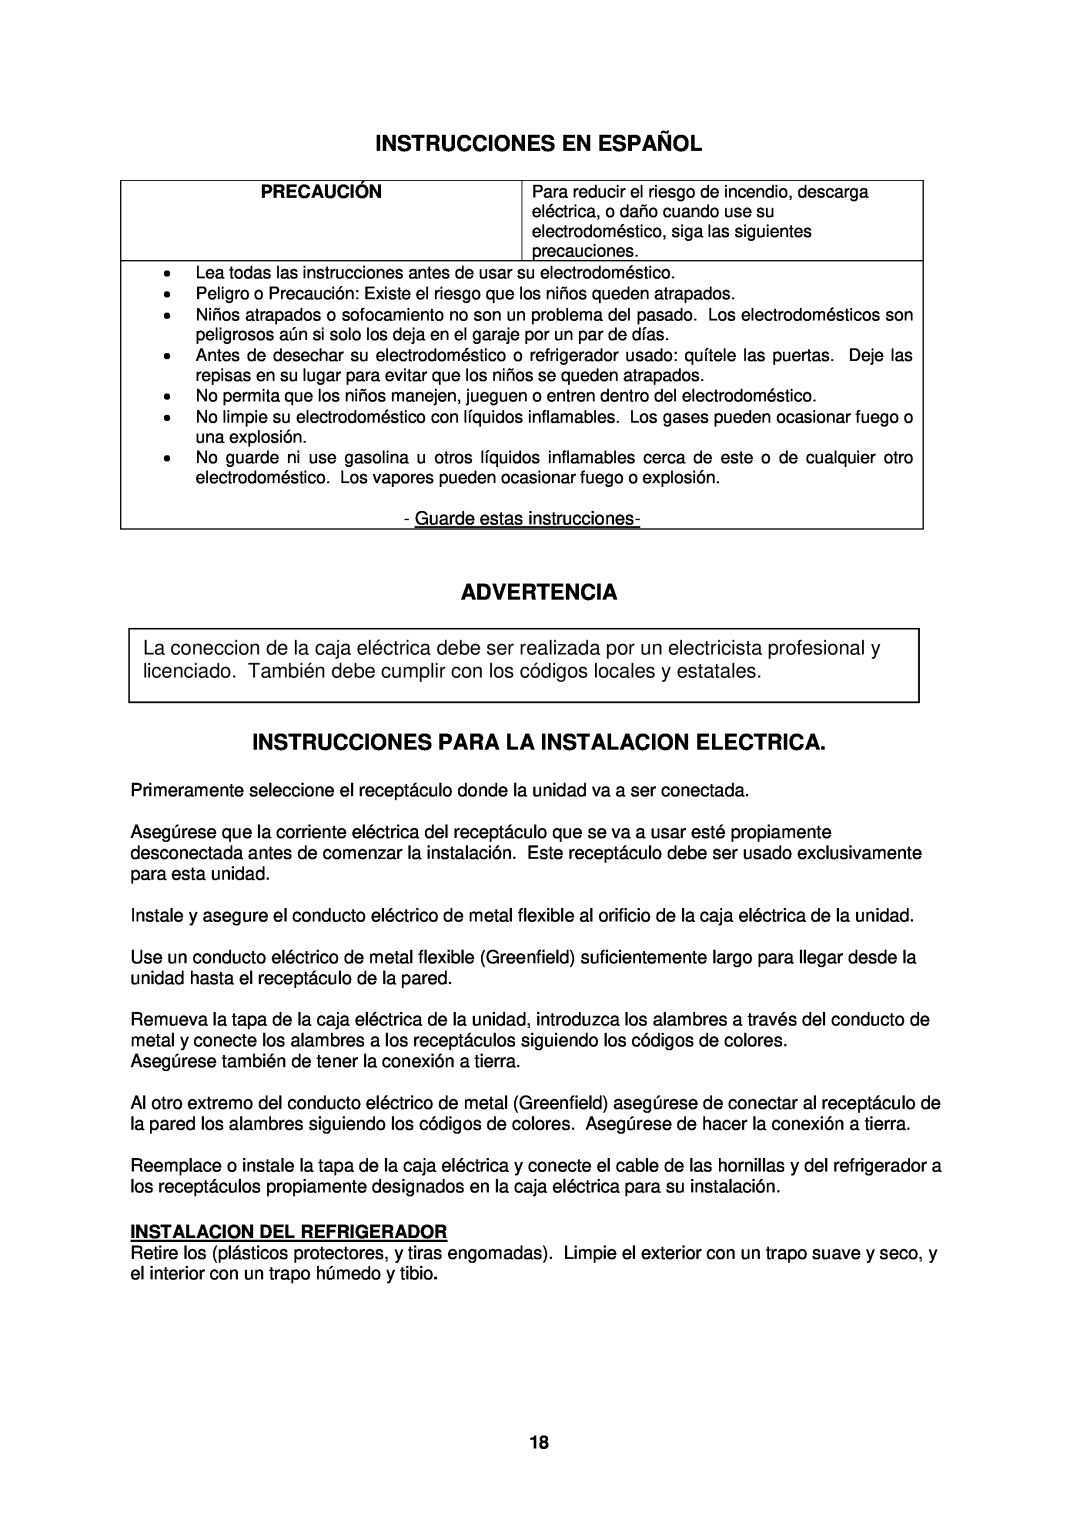 Avanti CK301SHP Instrucciones En Español, Advertencia, Instrucciones Para La Instalacion Electrica, Precaución 